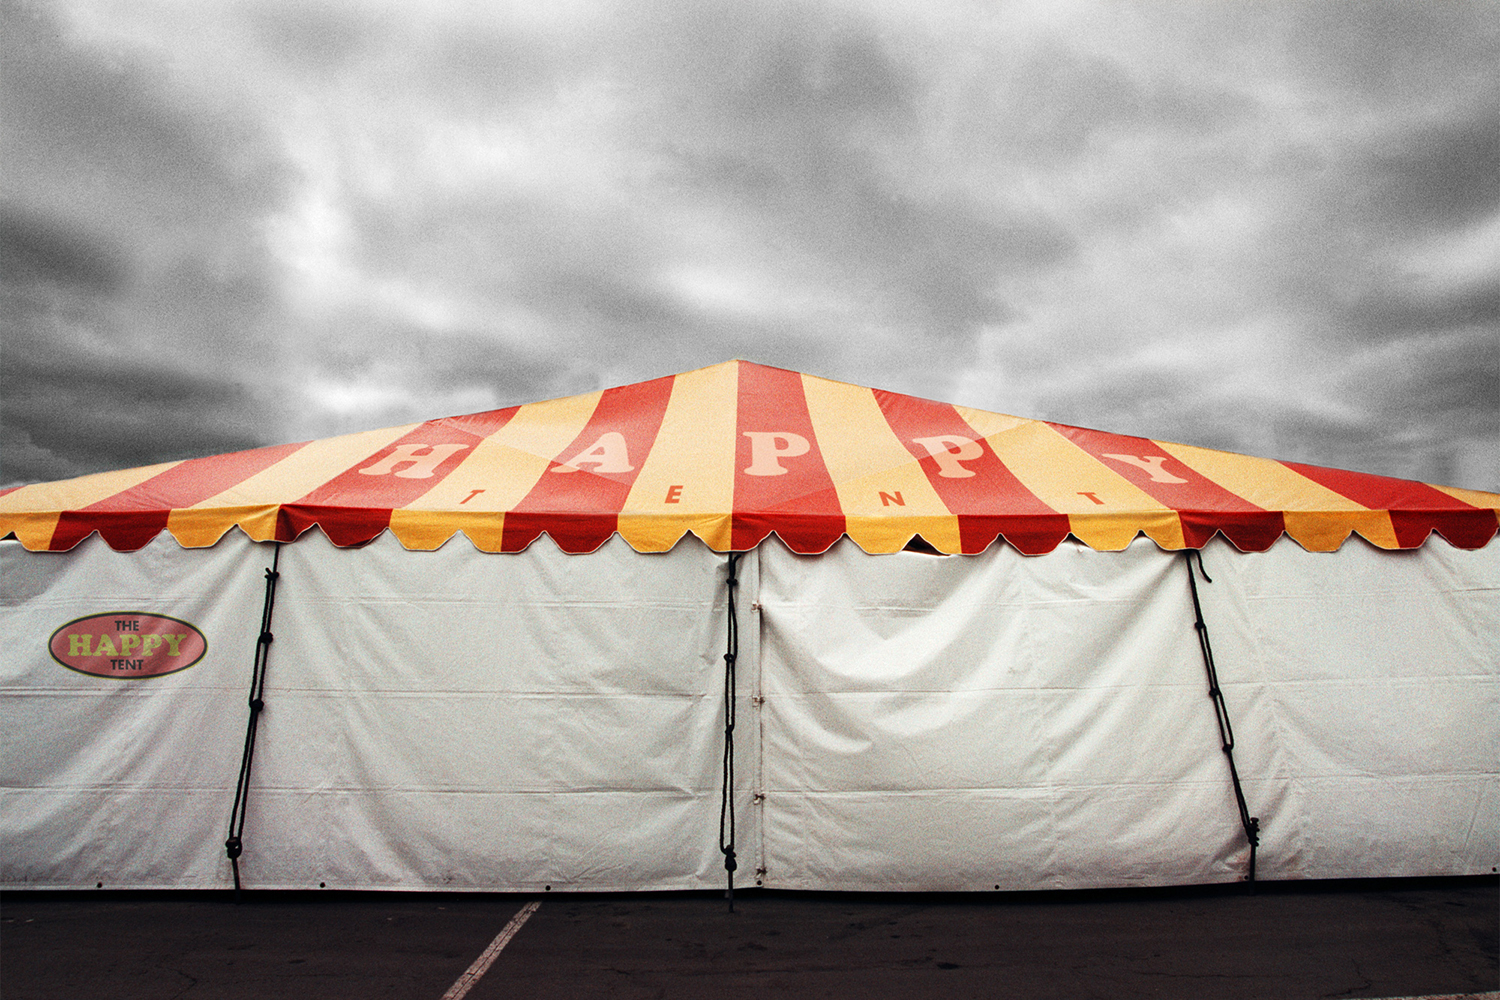 The-Happy-Tent.jpg